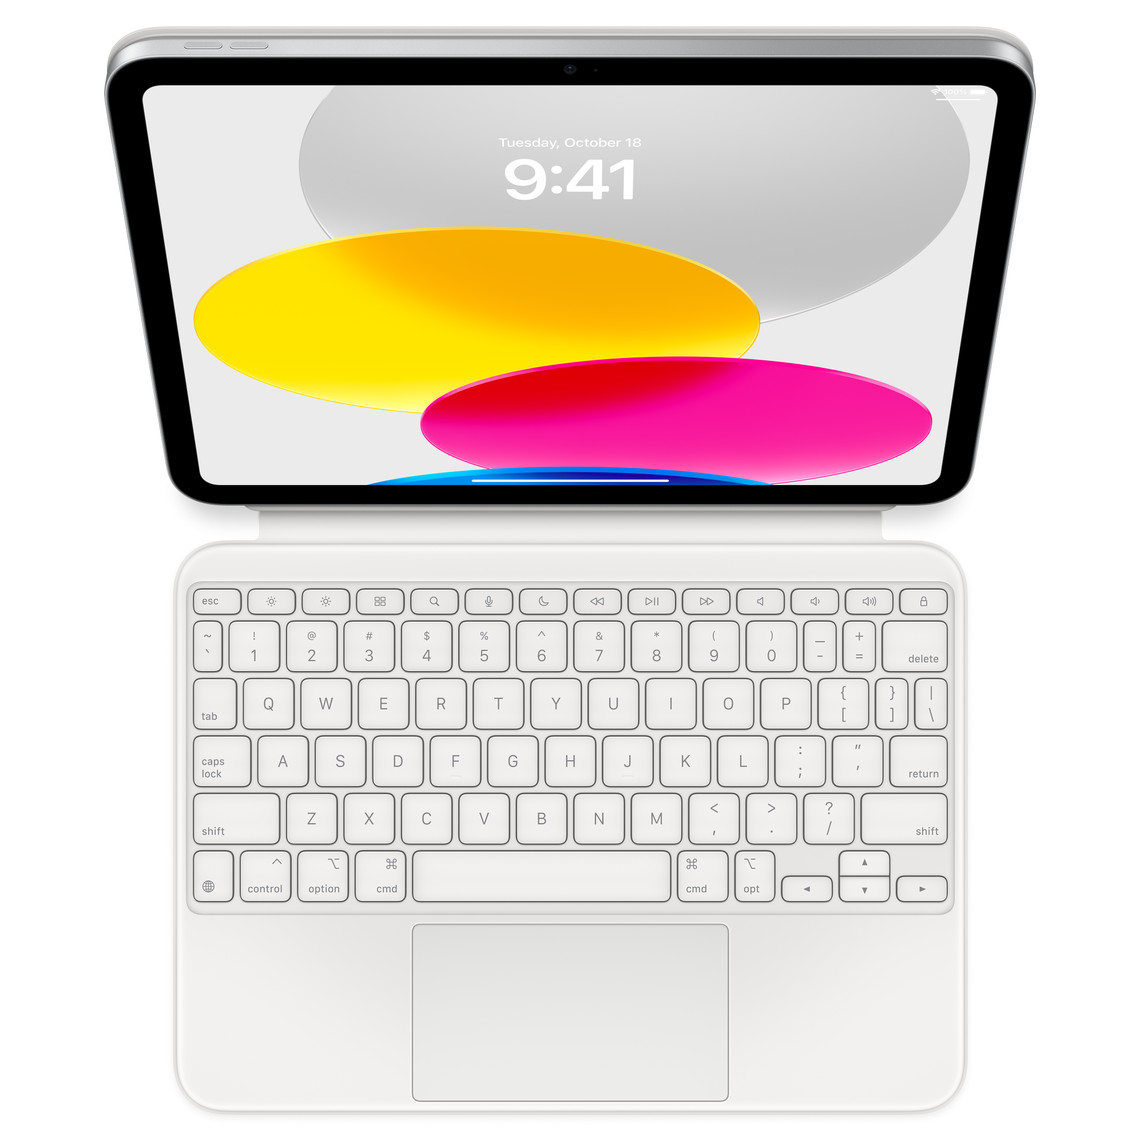 Näkymä ylhäältä päin pöydällä olevasta iPadista, johon on liitetty Magic Keyboard Folio. Näytöllä näkyy värikkäitä pyöreitä kuvioita.